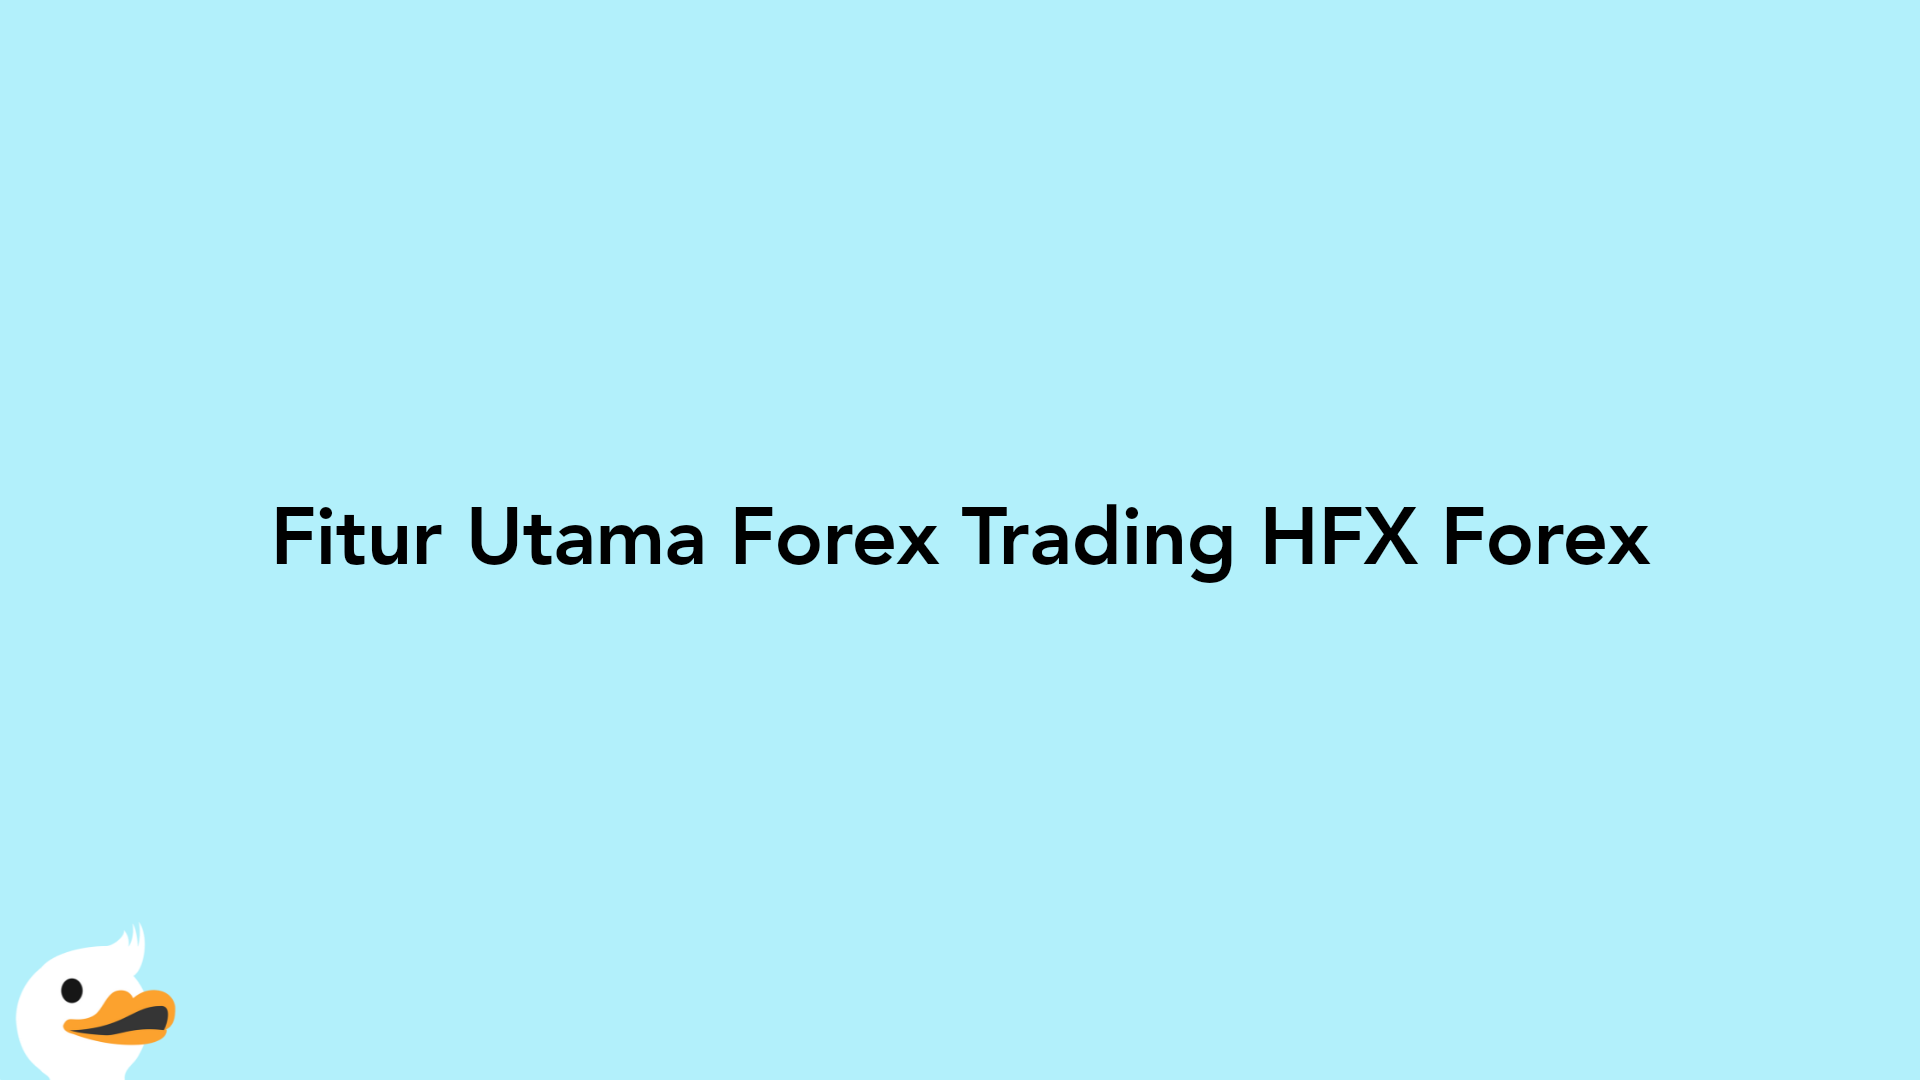 Fitur Utama Forex Trading HFX Forex